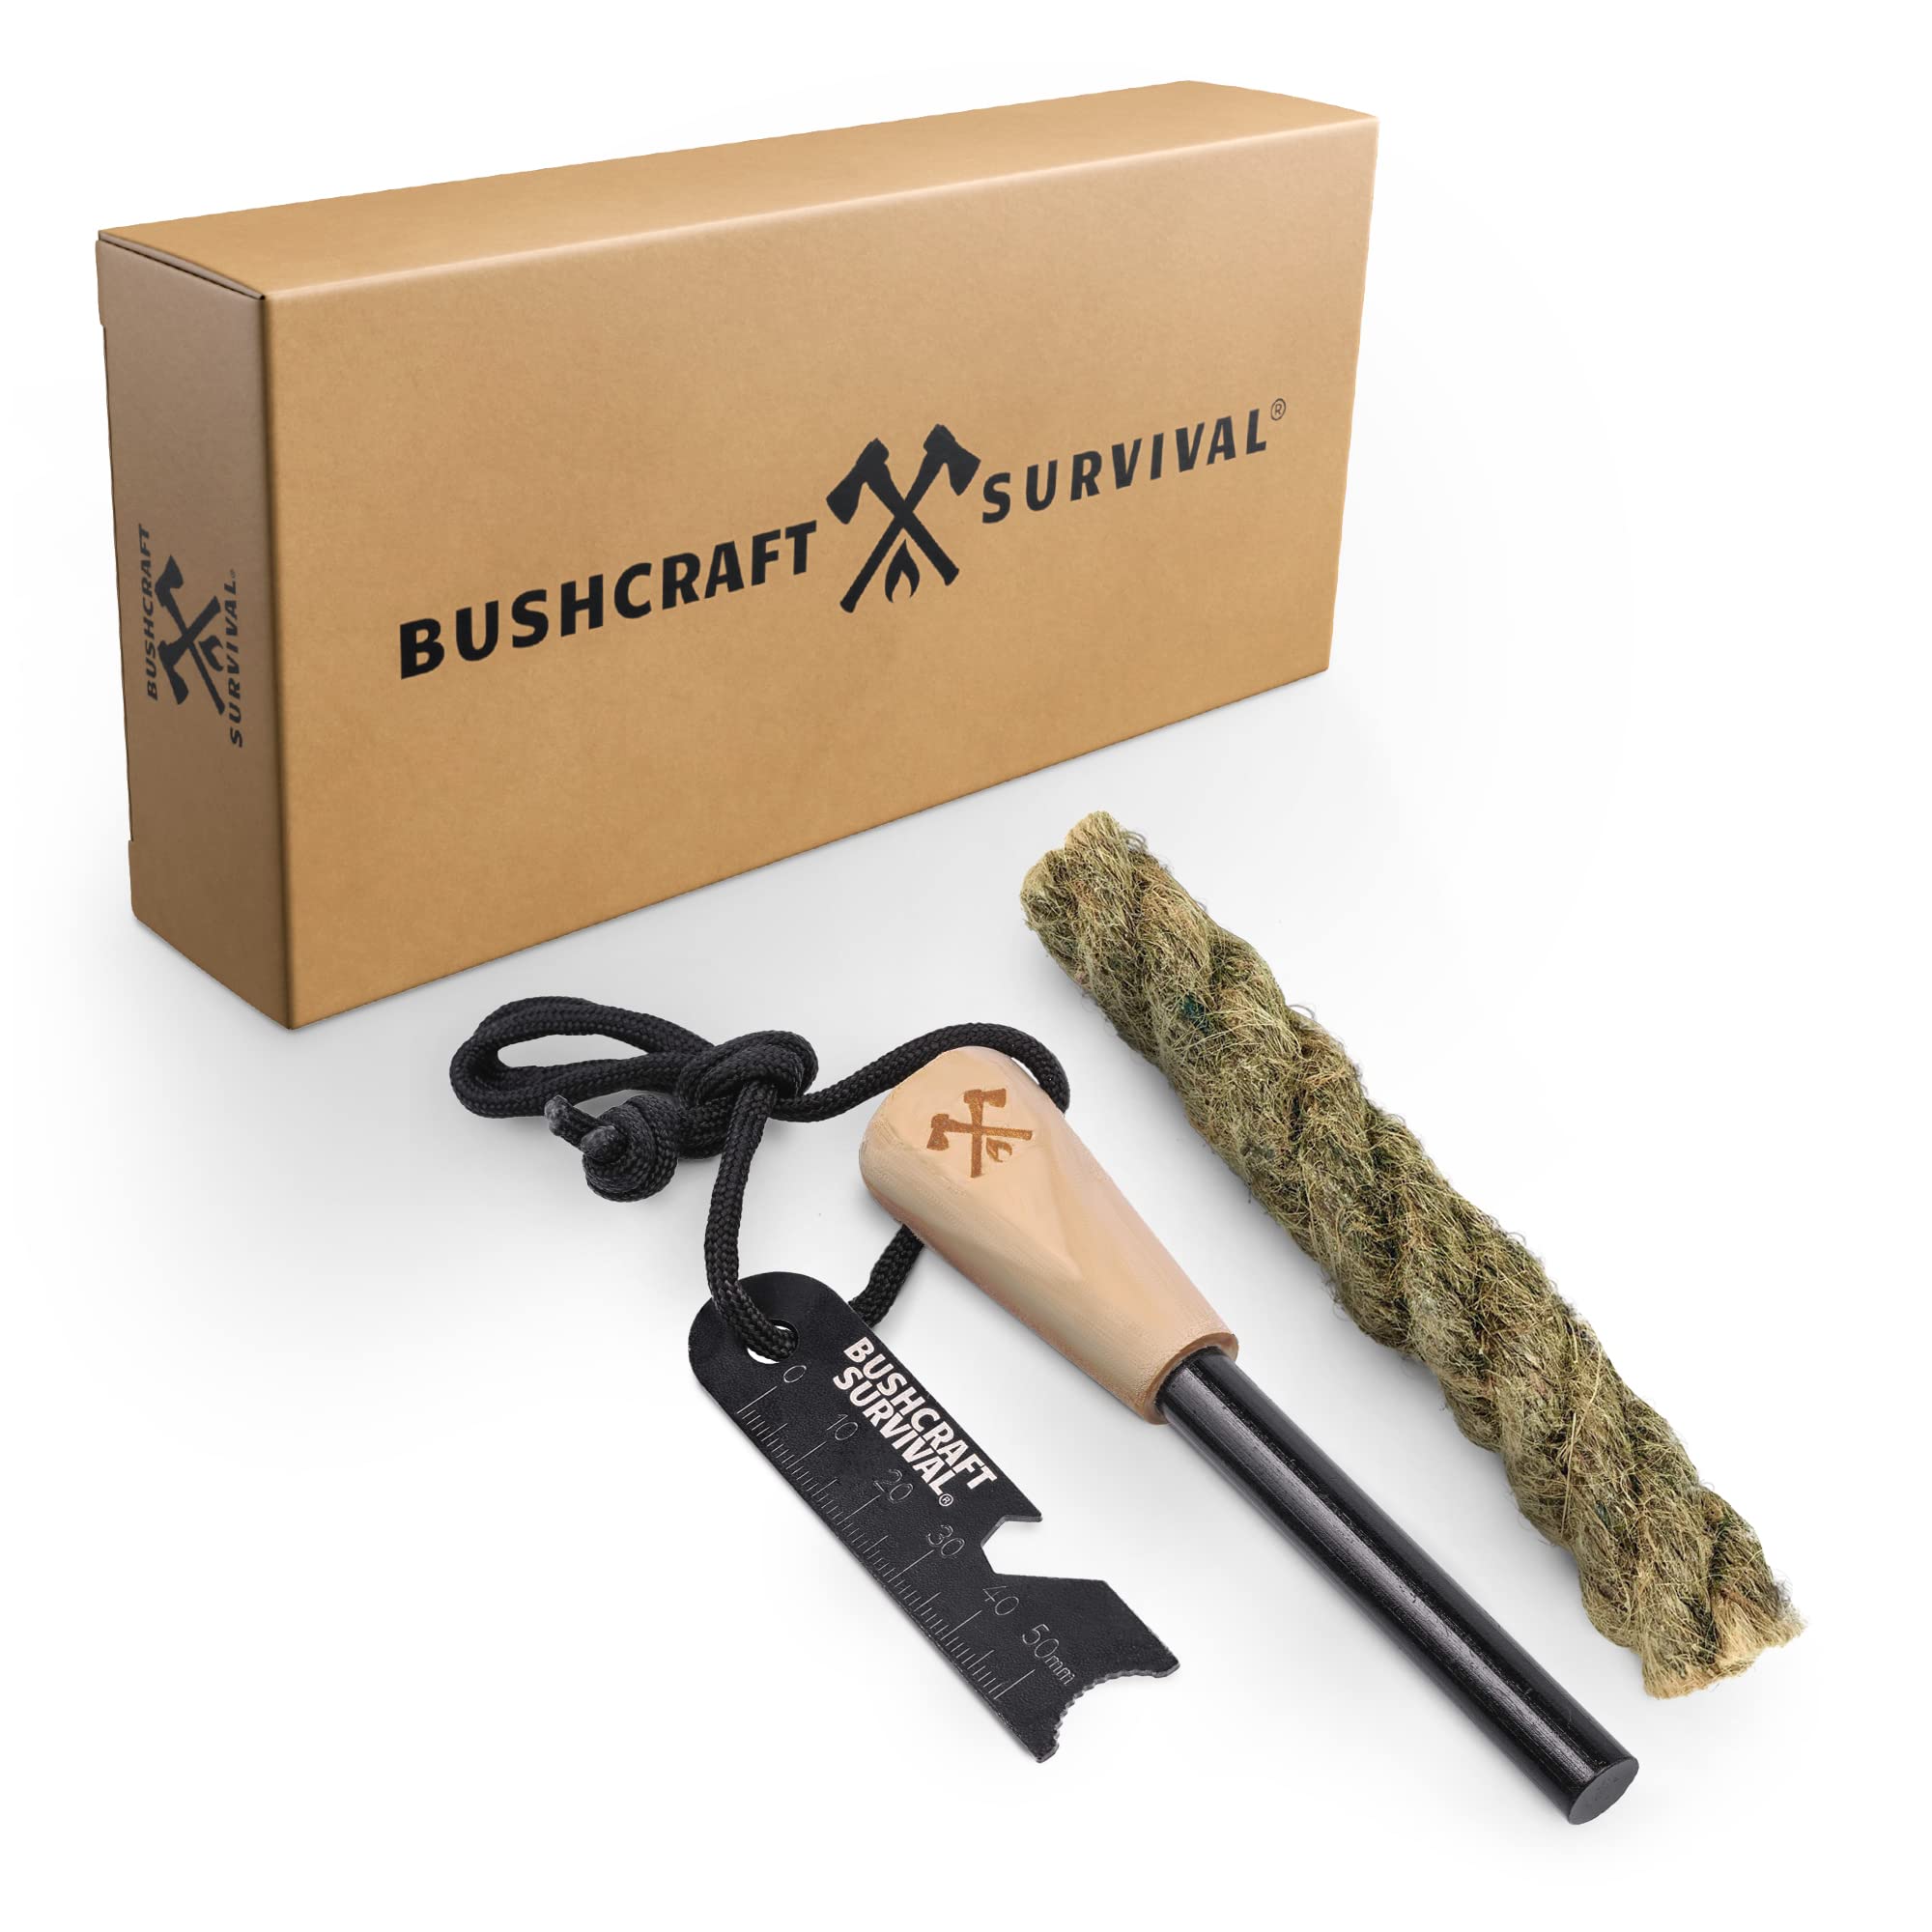 Bushcraft Survival Ferro Rod Fire Starter Kit & Backpacking